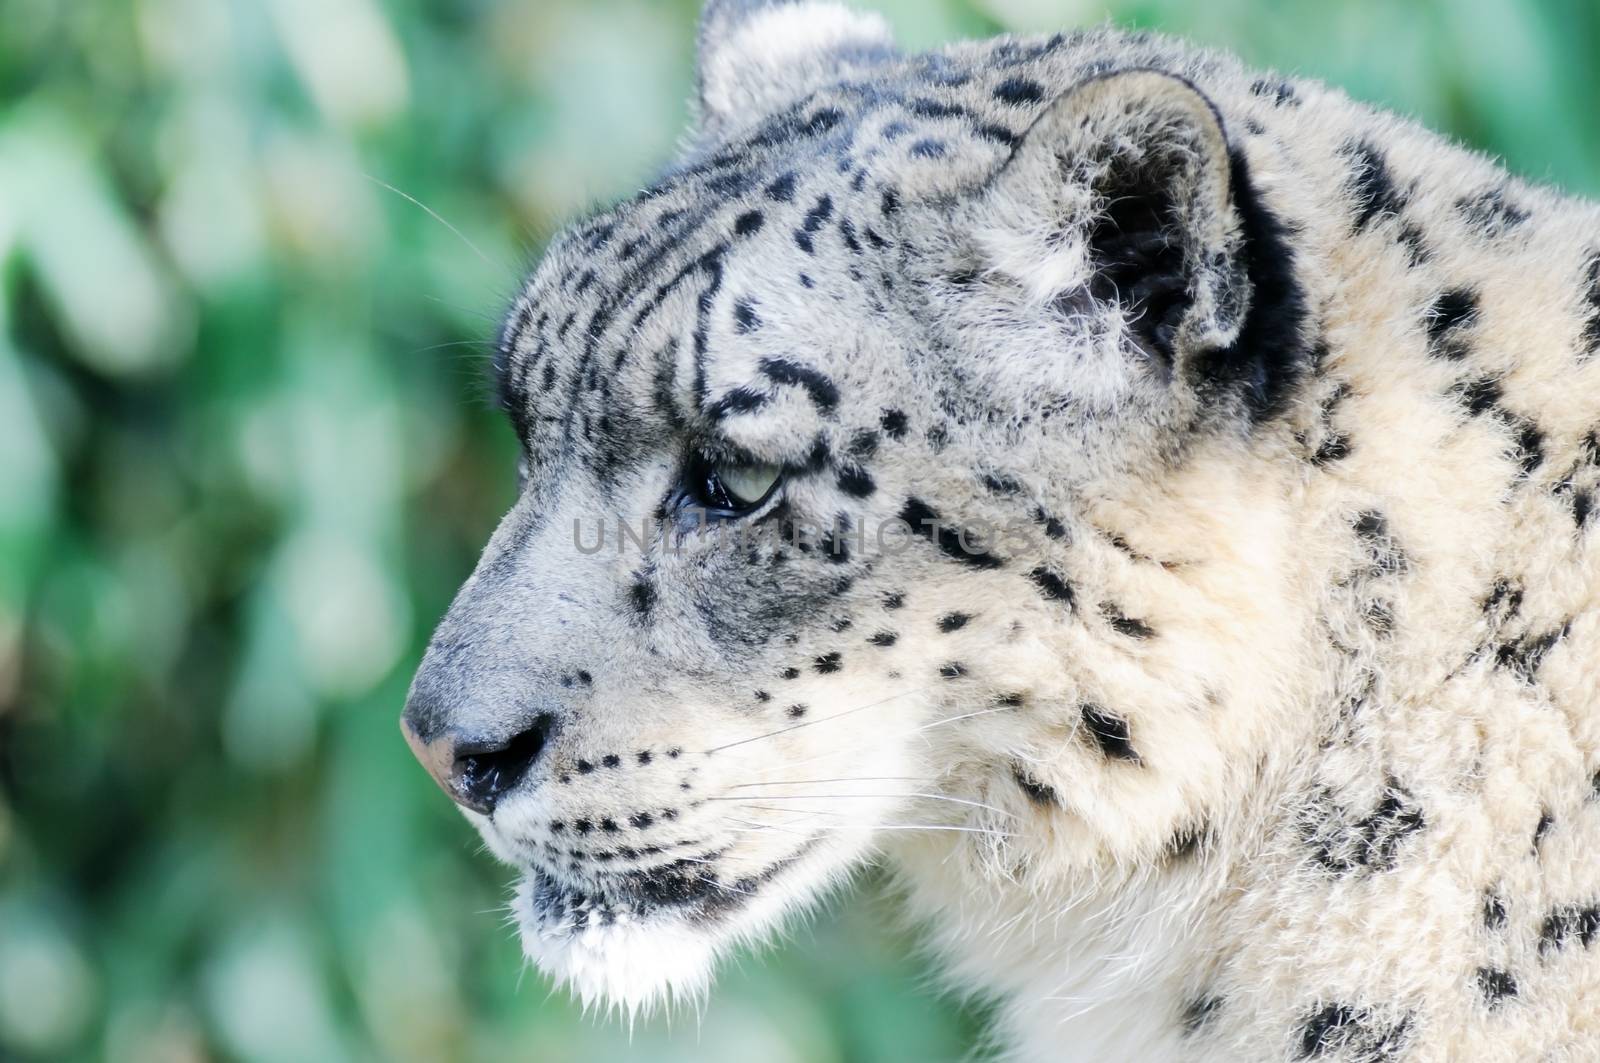 Closeup profile of snow leopard showing fur detail